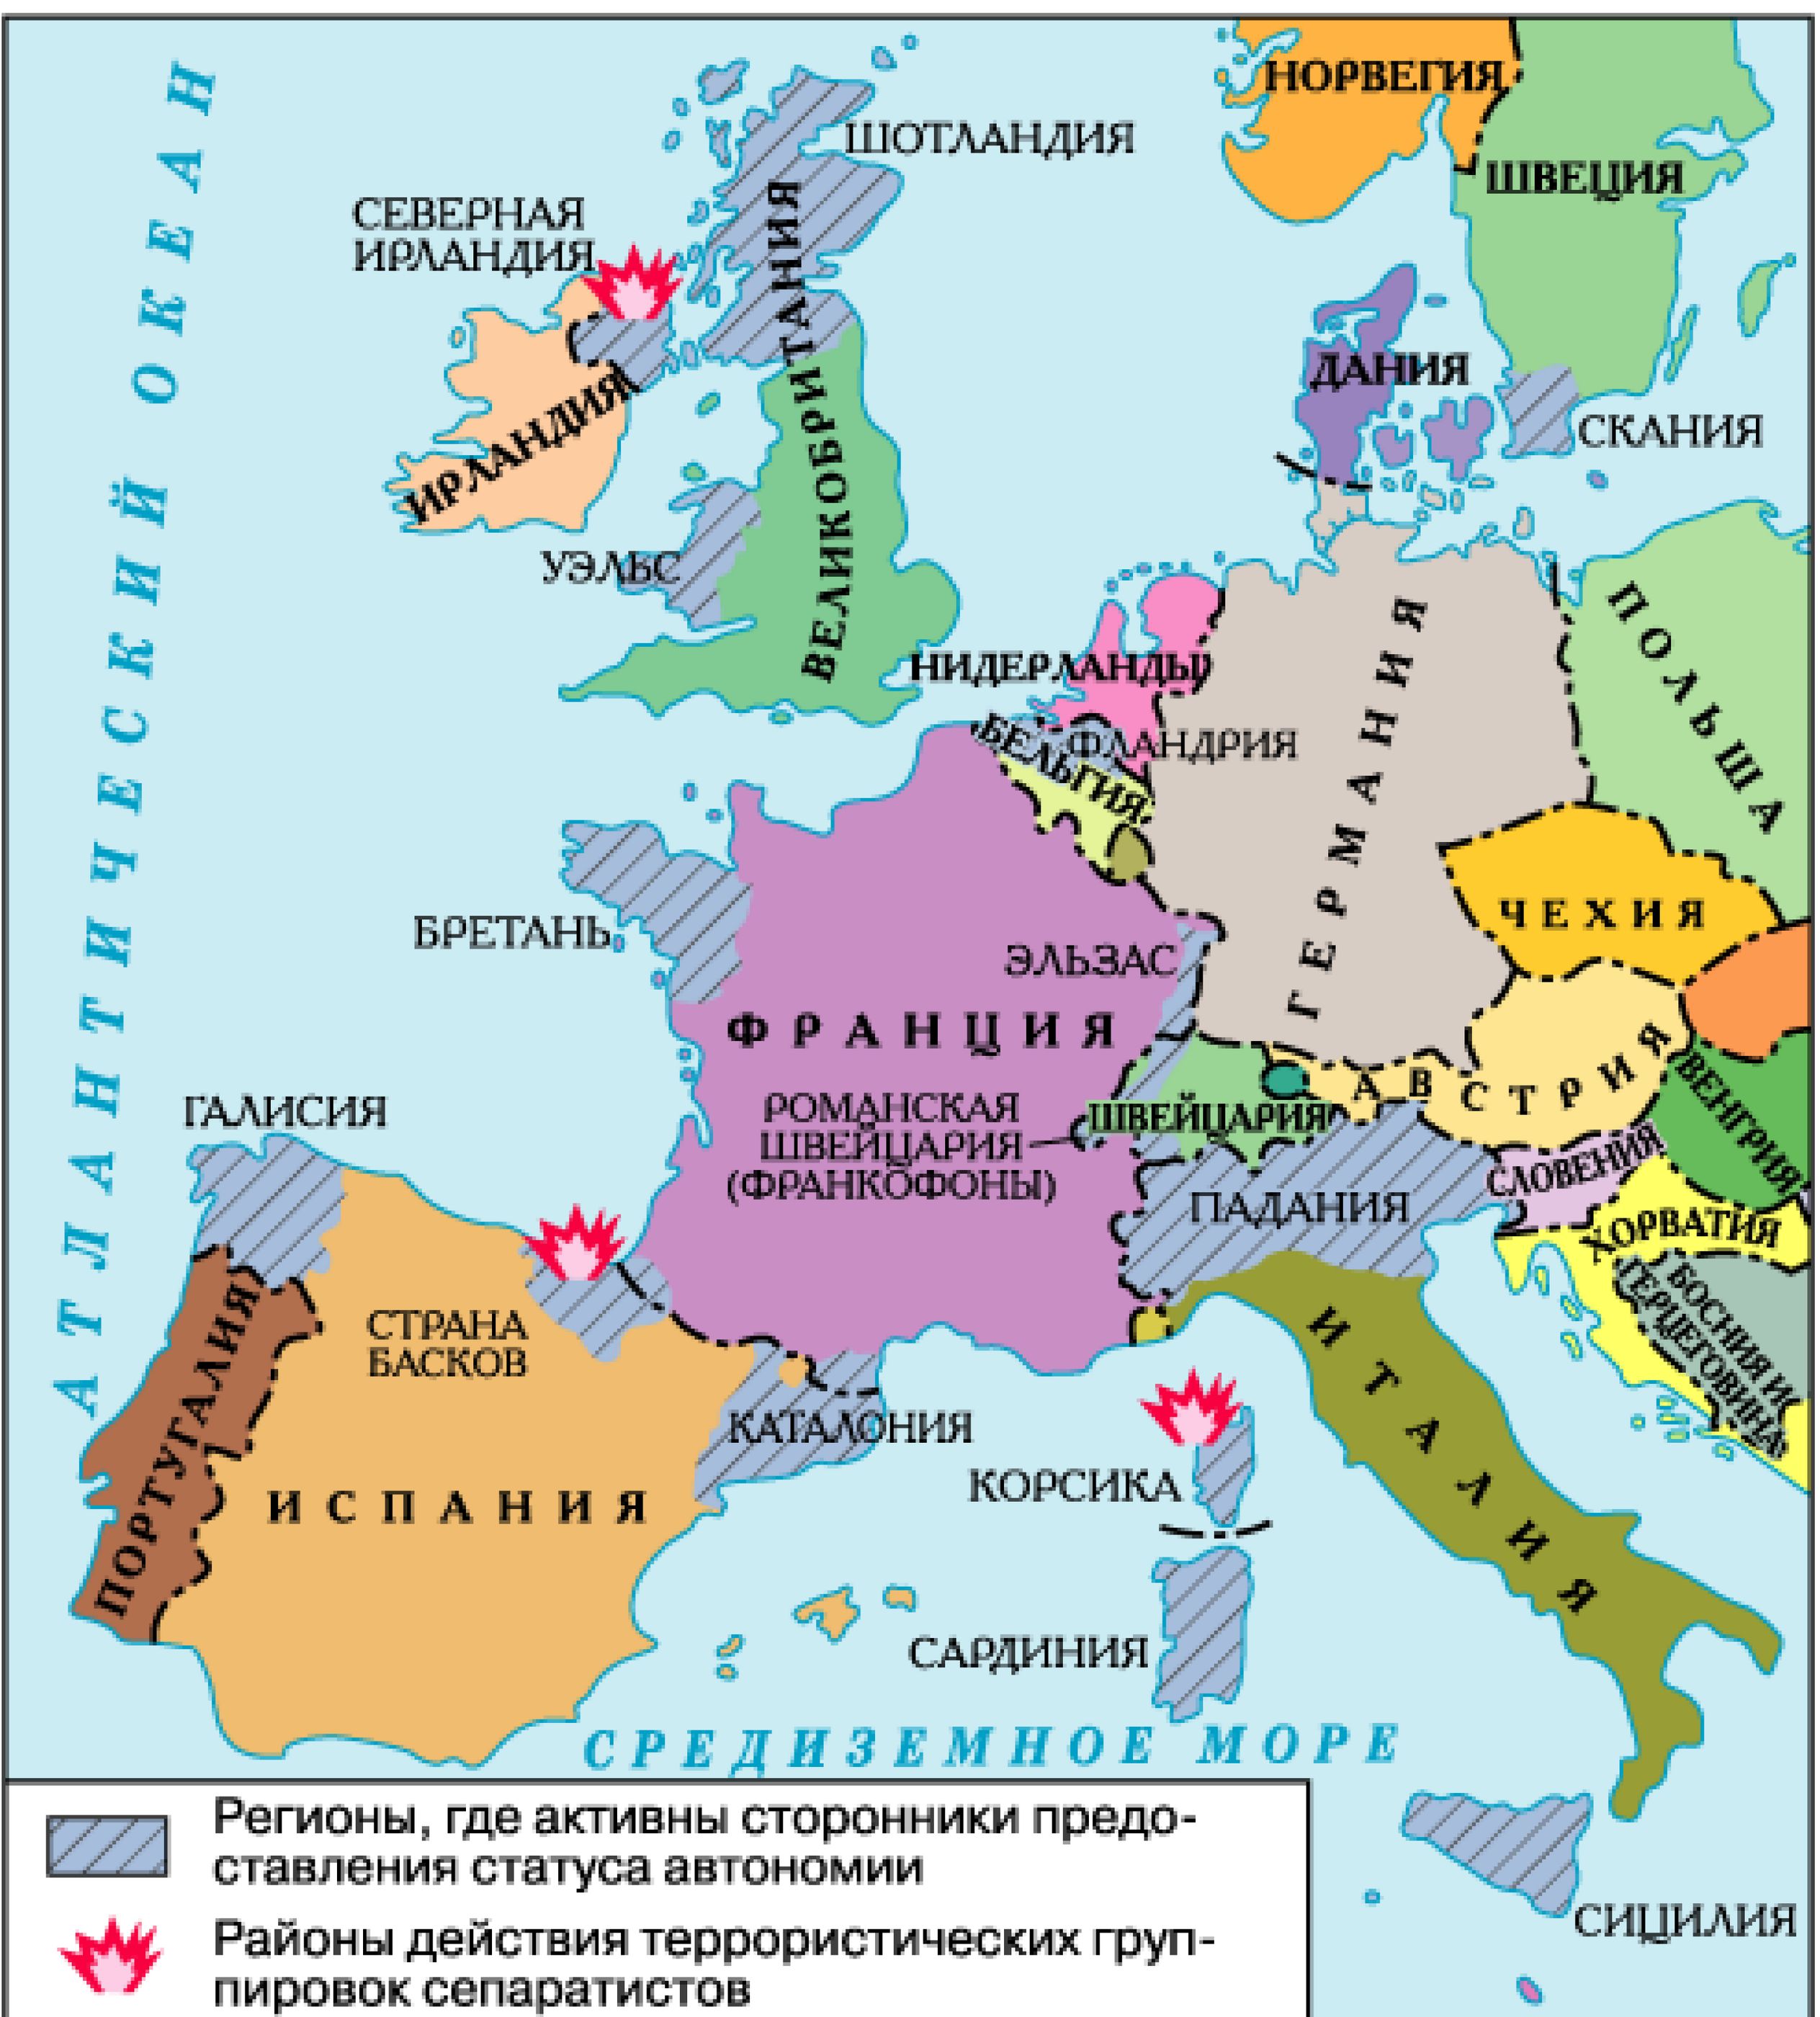 Западная европа в 2. Карта Западной Европы со странами. Политическая карта зарубежной Европы со странами. Политическая карта зарубежной Европы со странами и столицами. Западная Европа карта страны и столицы.